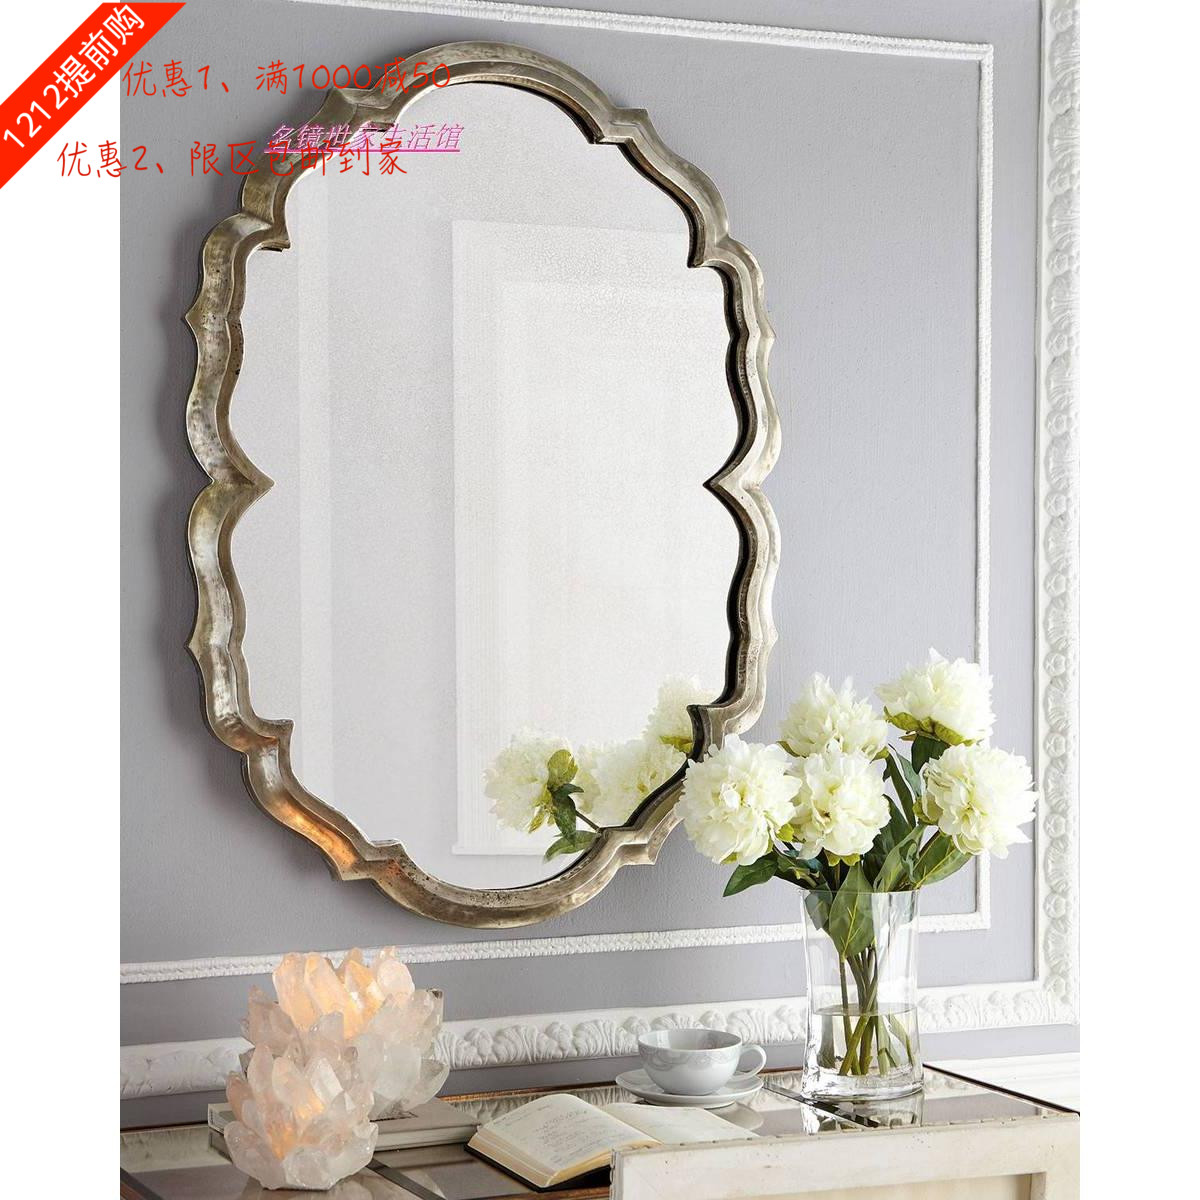 欧式装饰镜壁挂 餐边墙镜新古典玄关镜 后现代梳妆镜浴室镜可定制